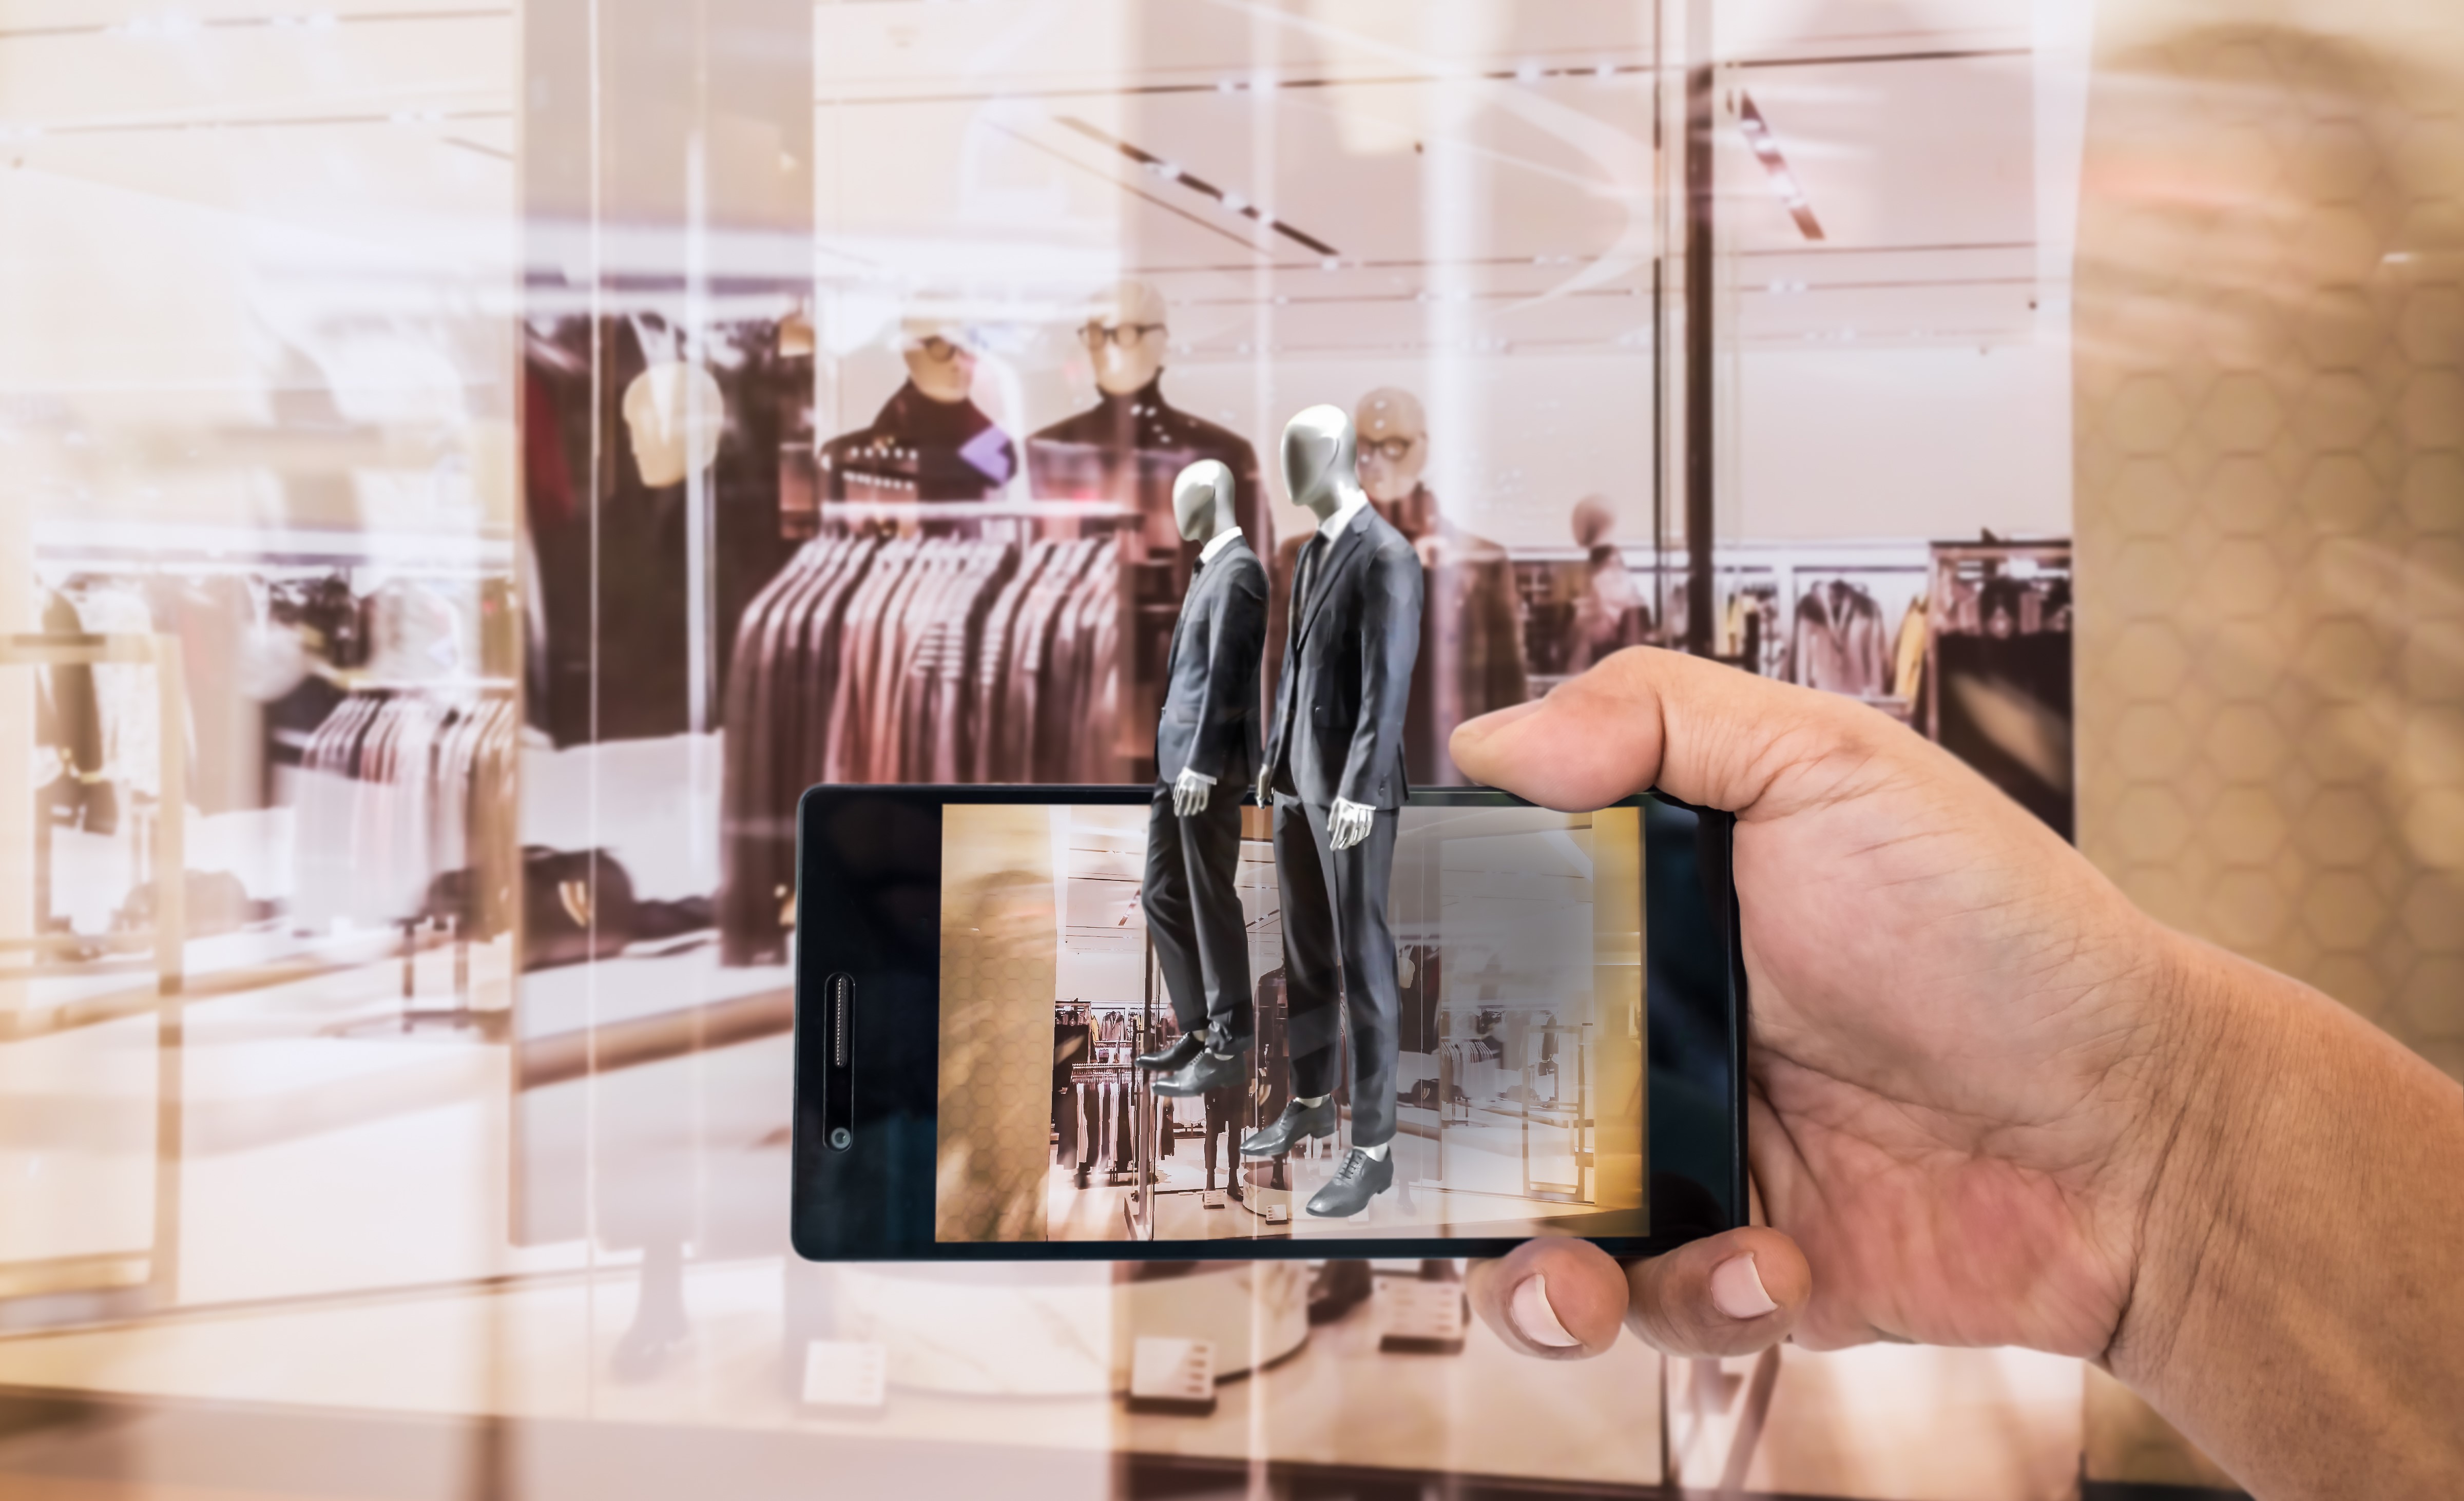 手持手机拍摄橱窗内的服装店场景，手机屏幕显示反射影像，与实际背景融合，形成有趣的视觉效果。